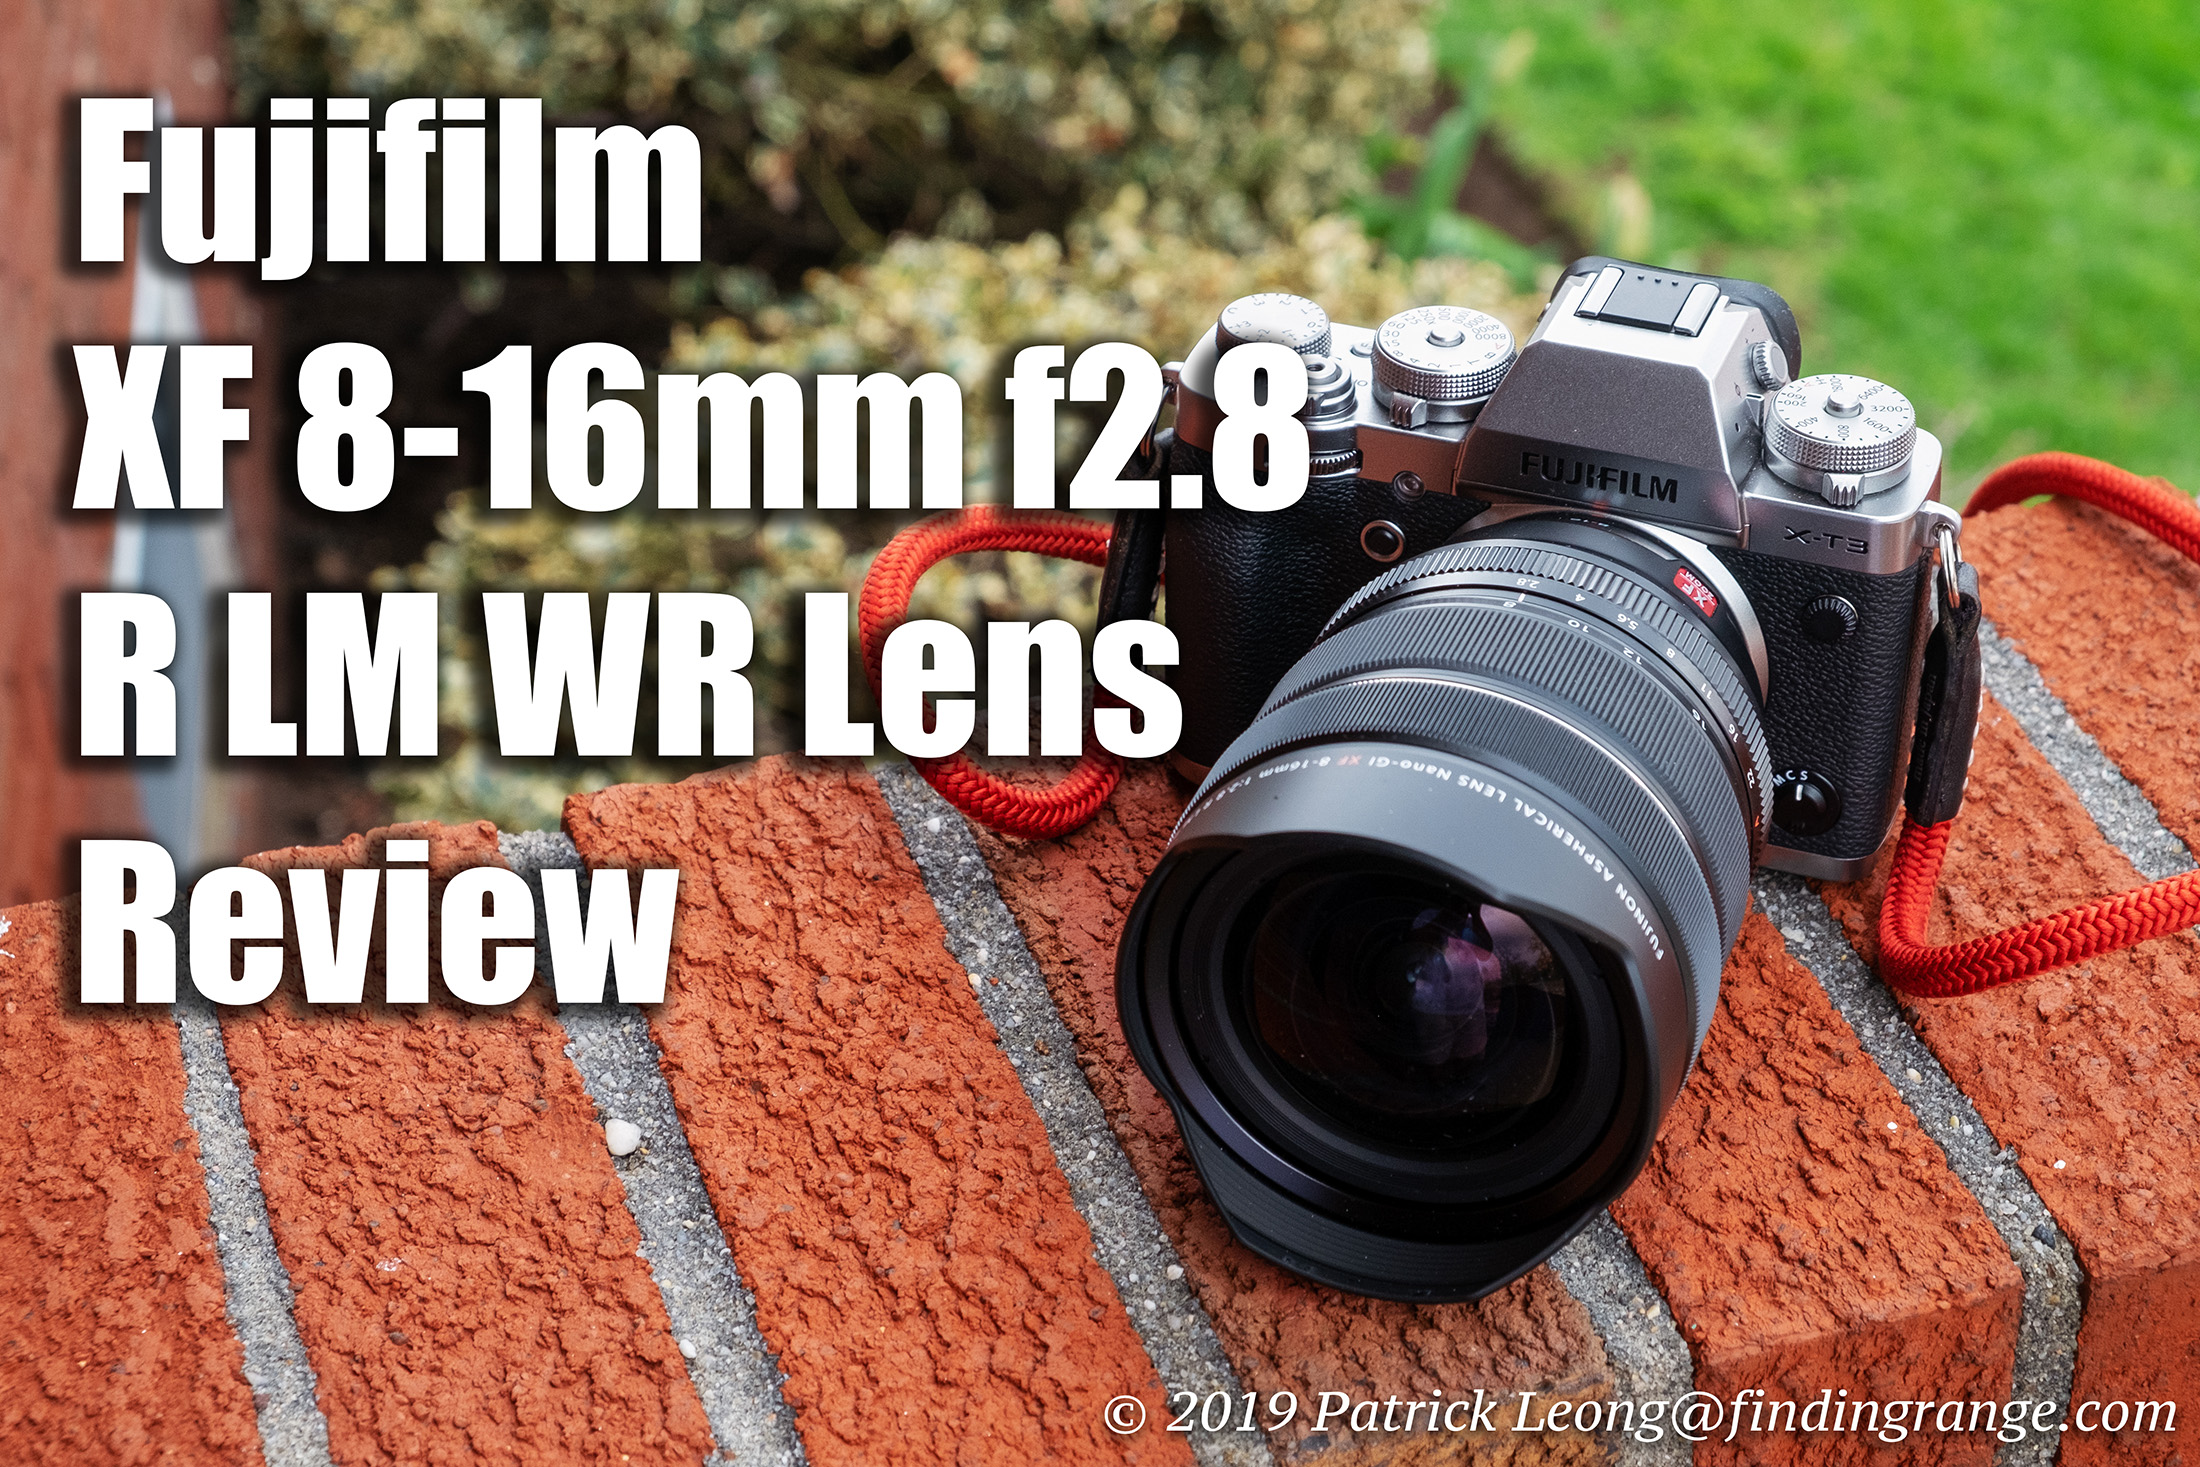 Fujifilm XF 8-16mm f2.8 R LM WR Lens Review